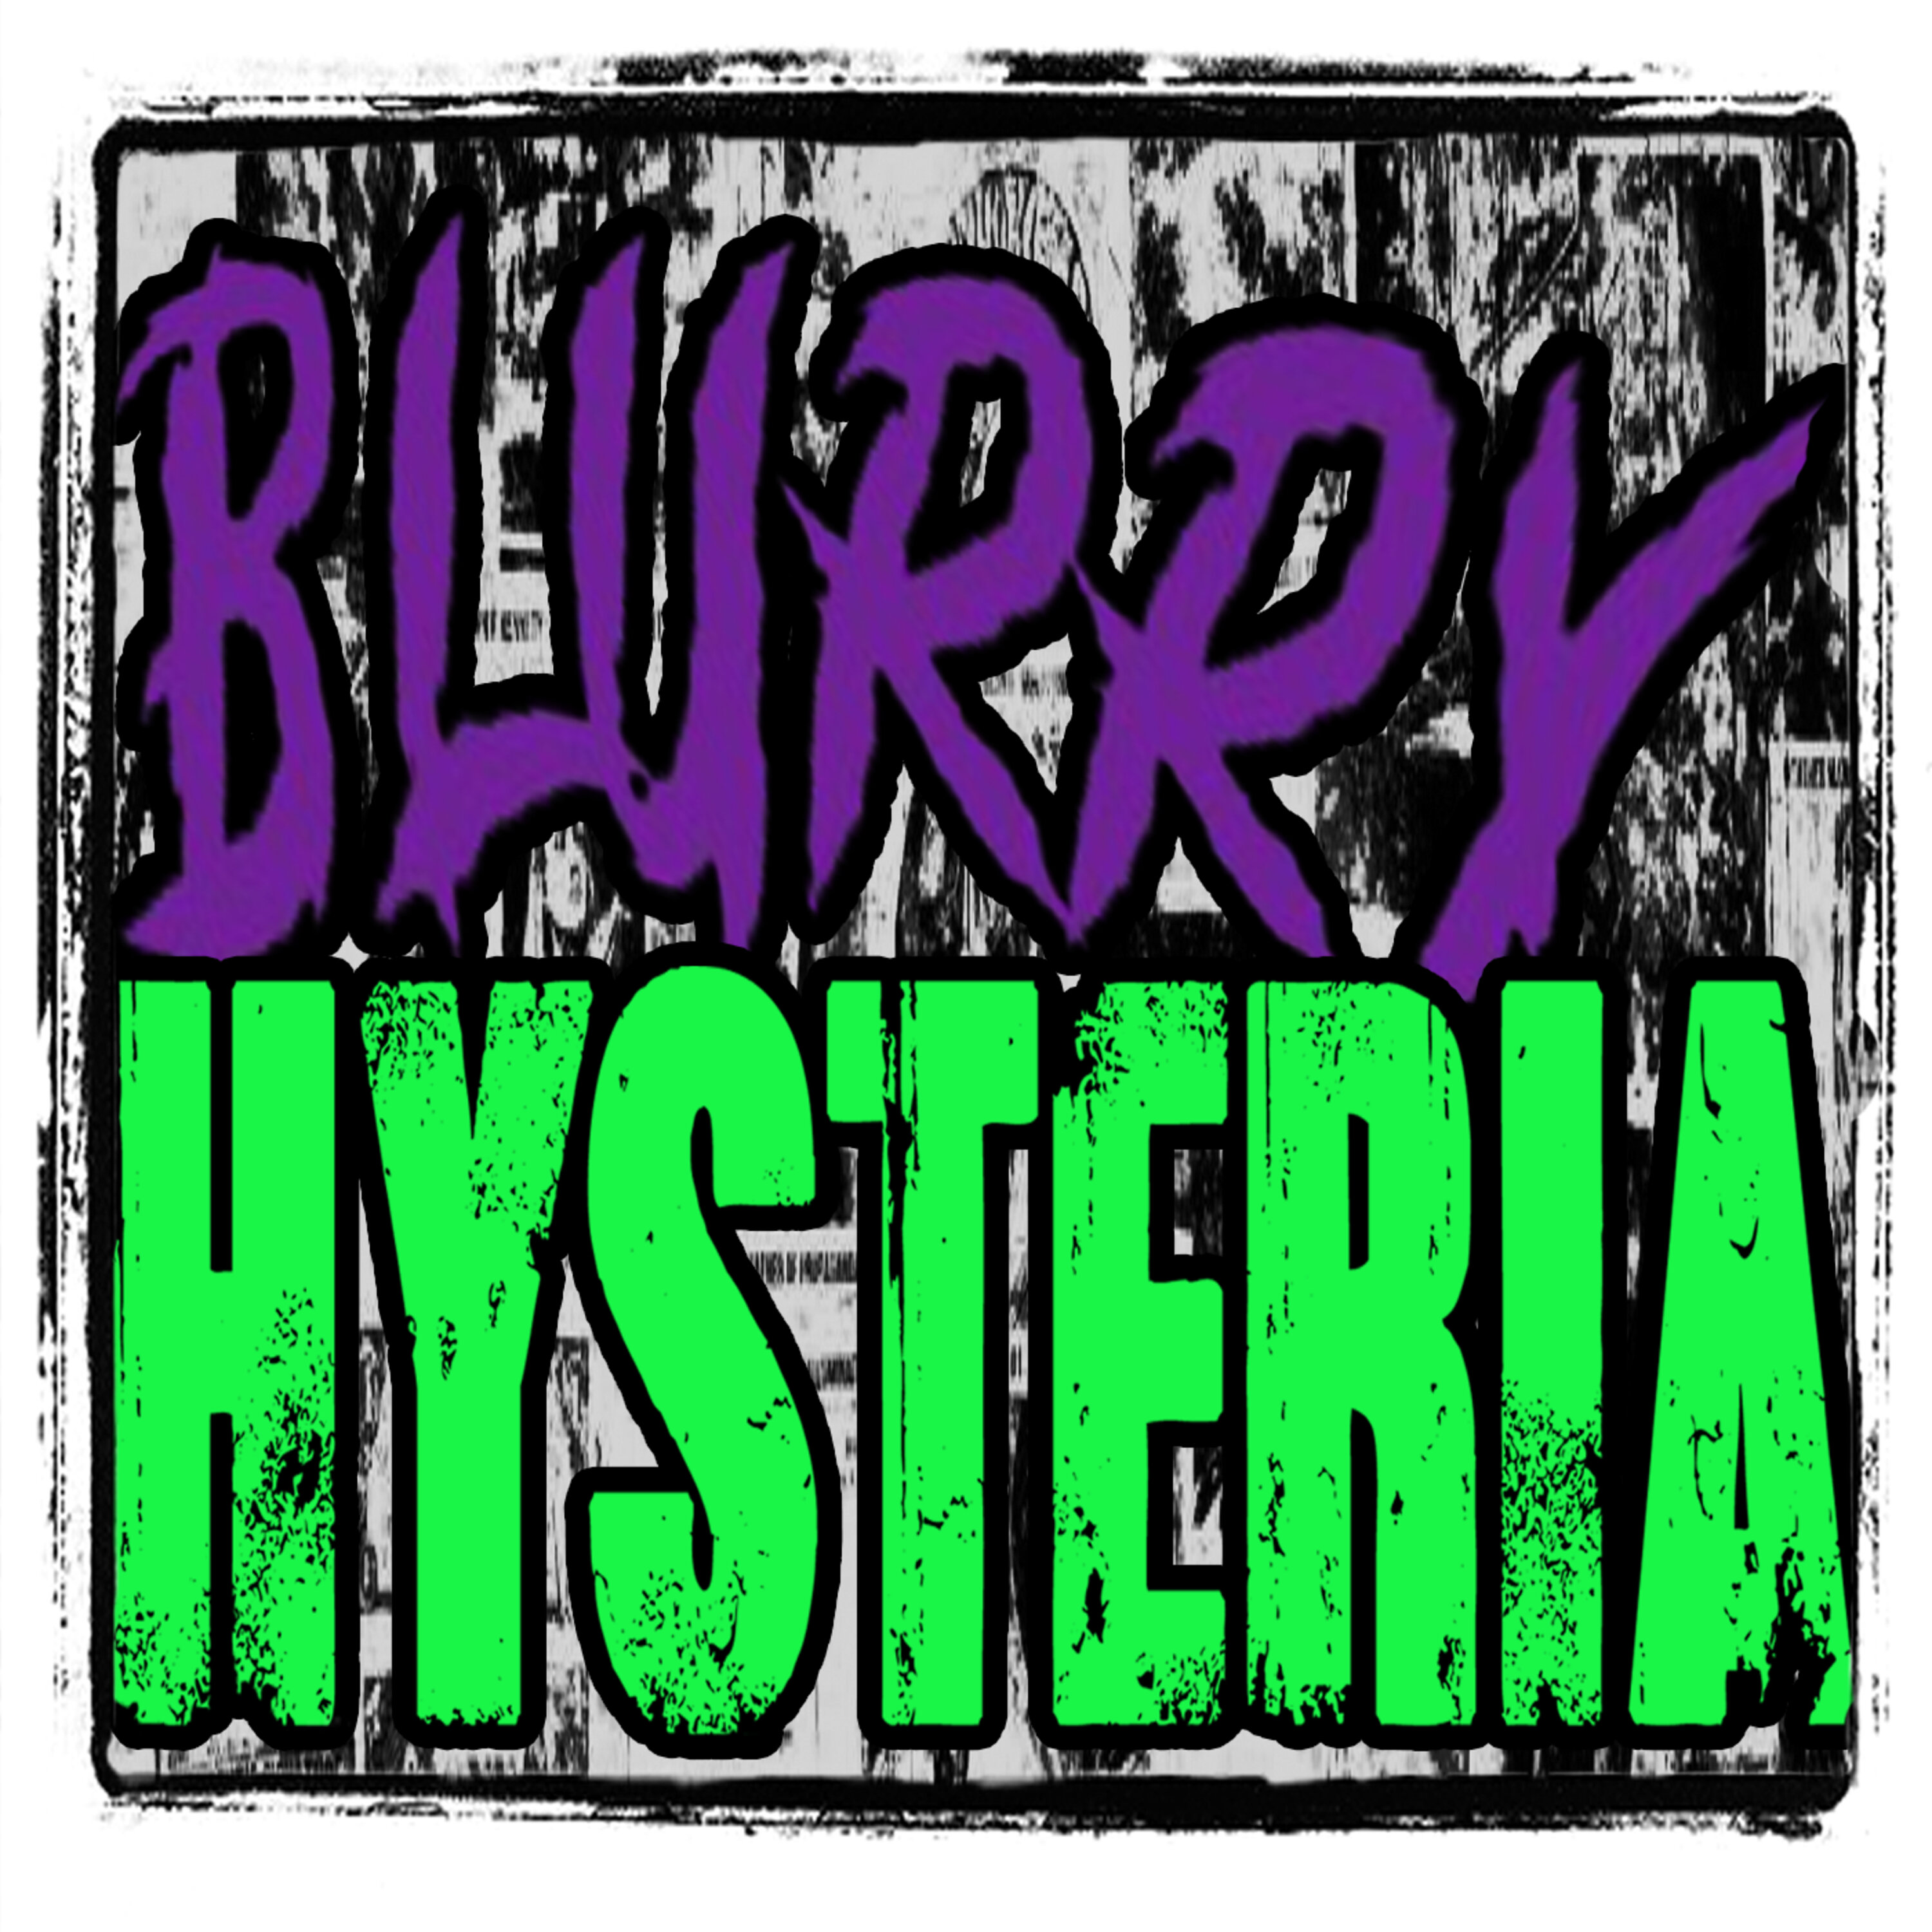 Blurry Hysteria 14: FEMA's UFO Rules